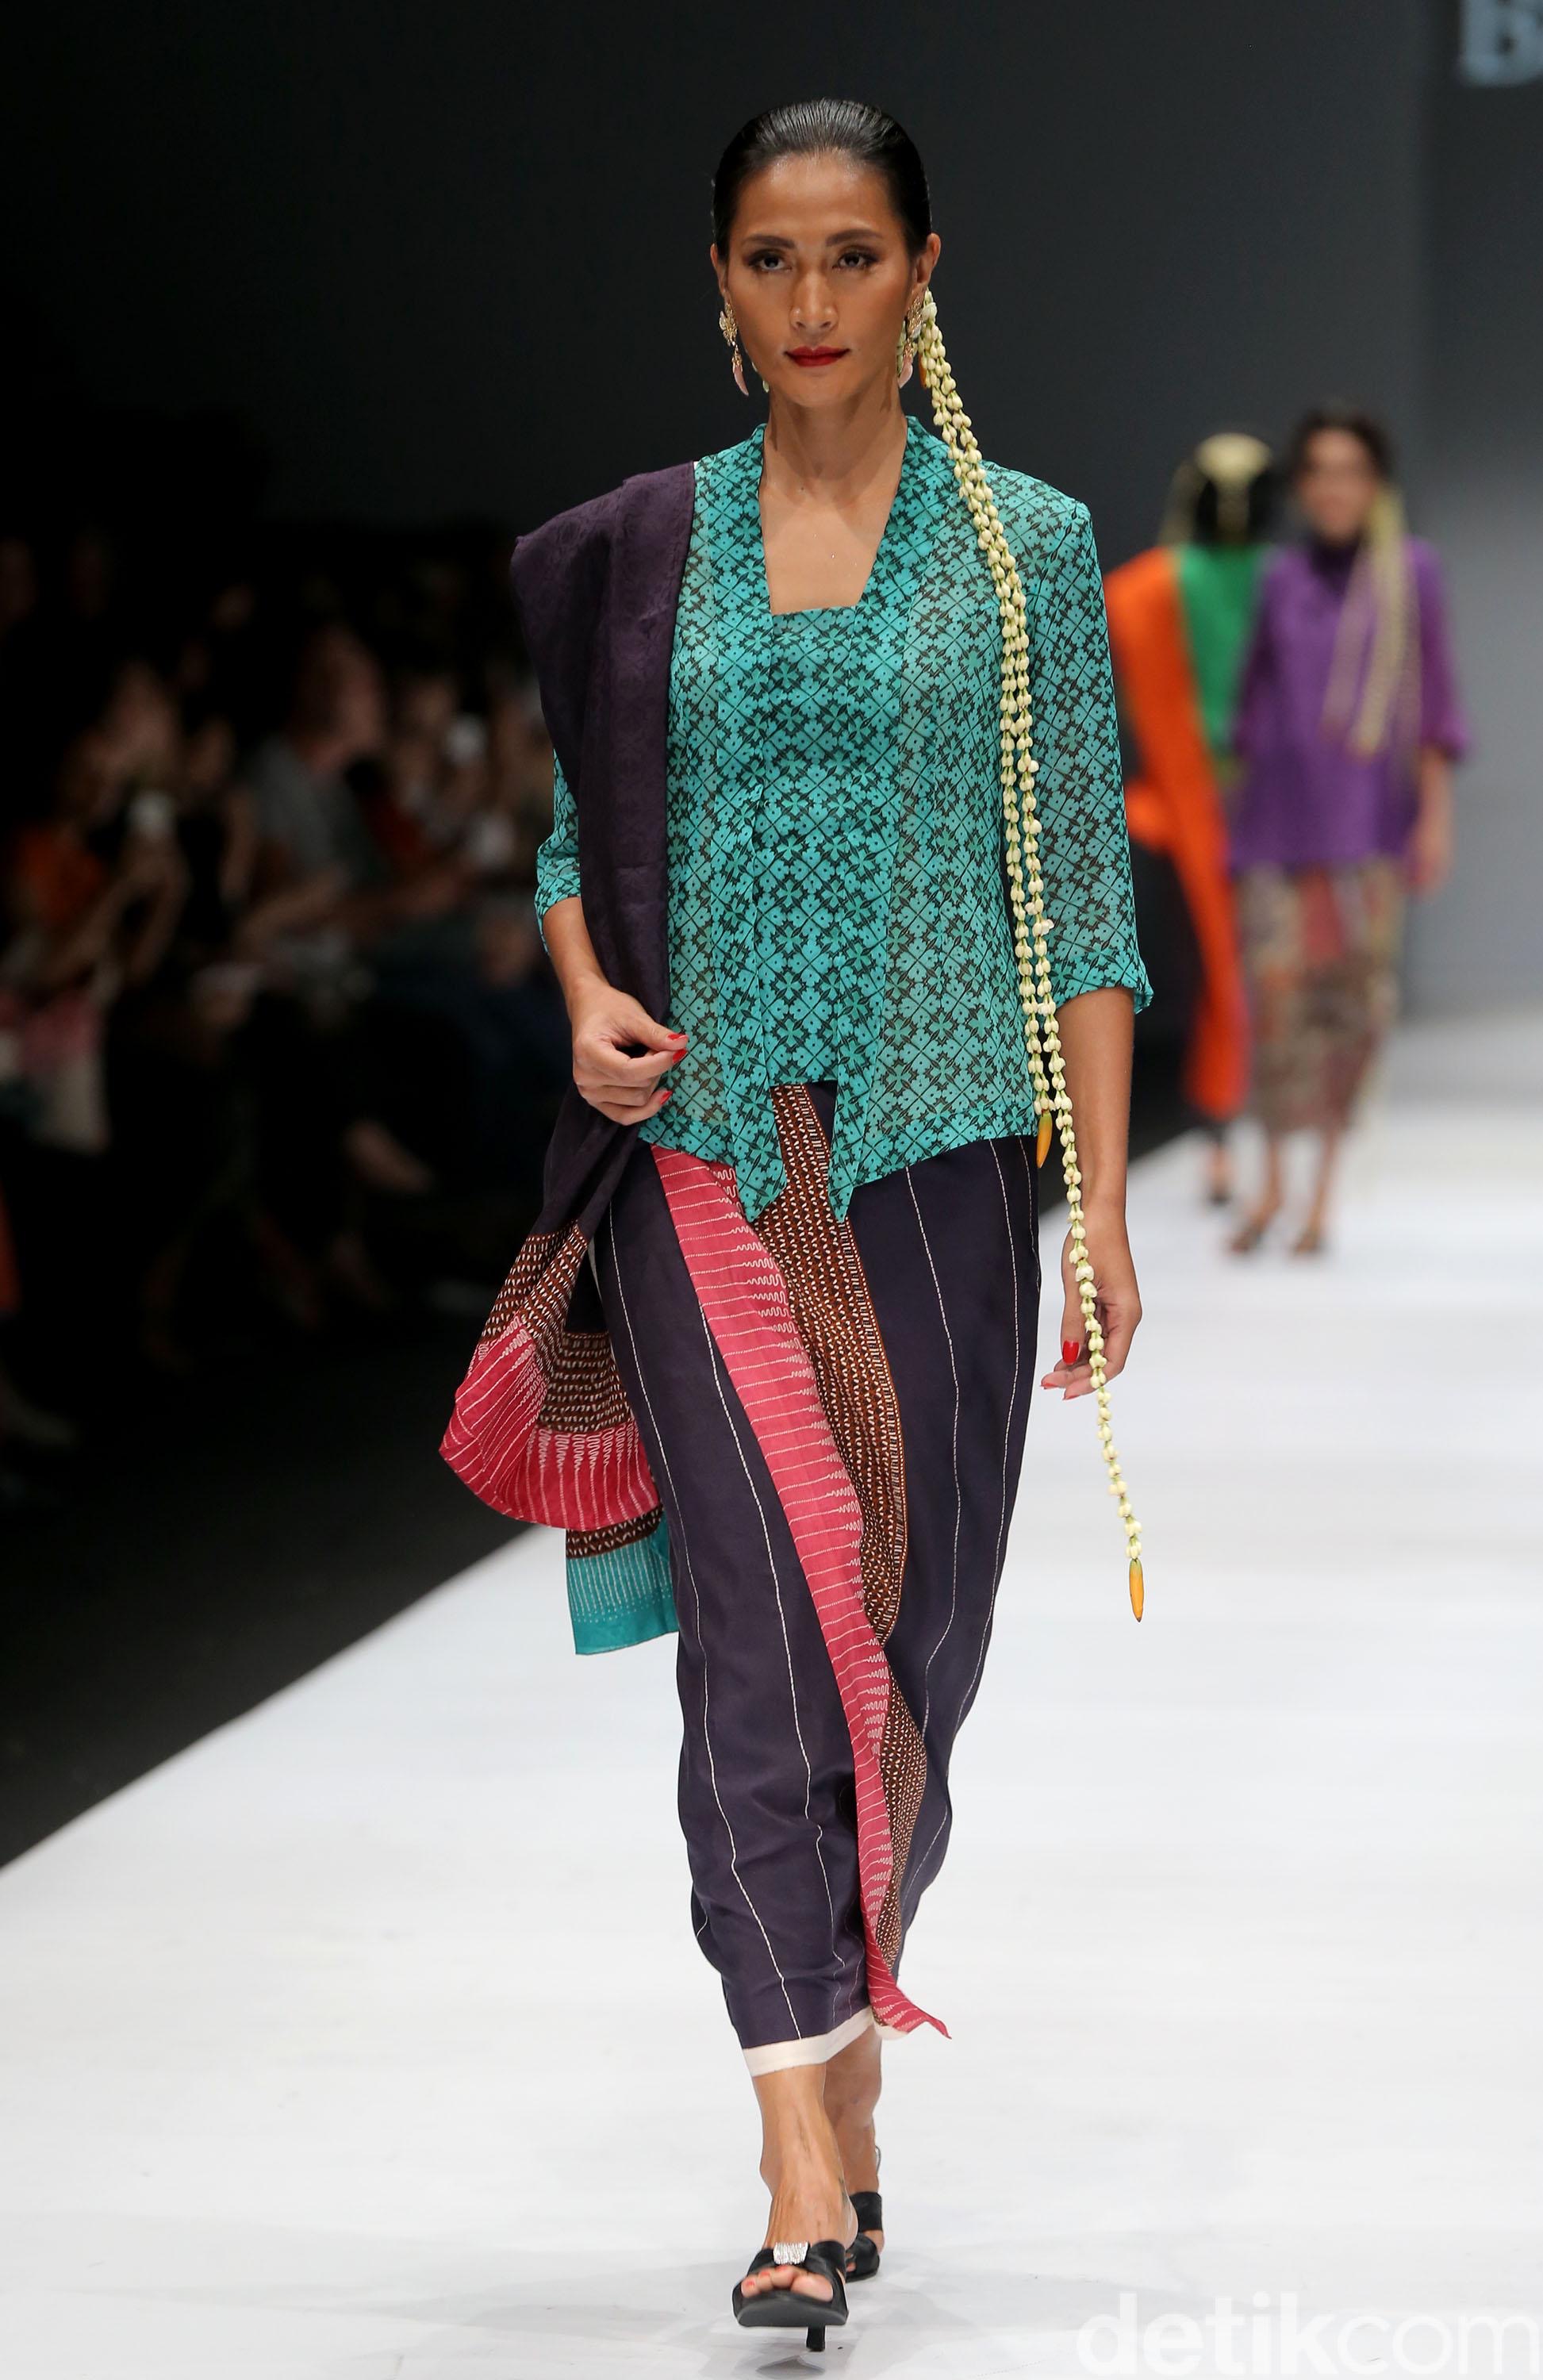 Model baju batik atasan tradisional